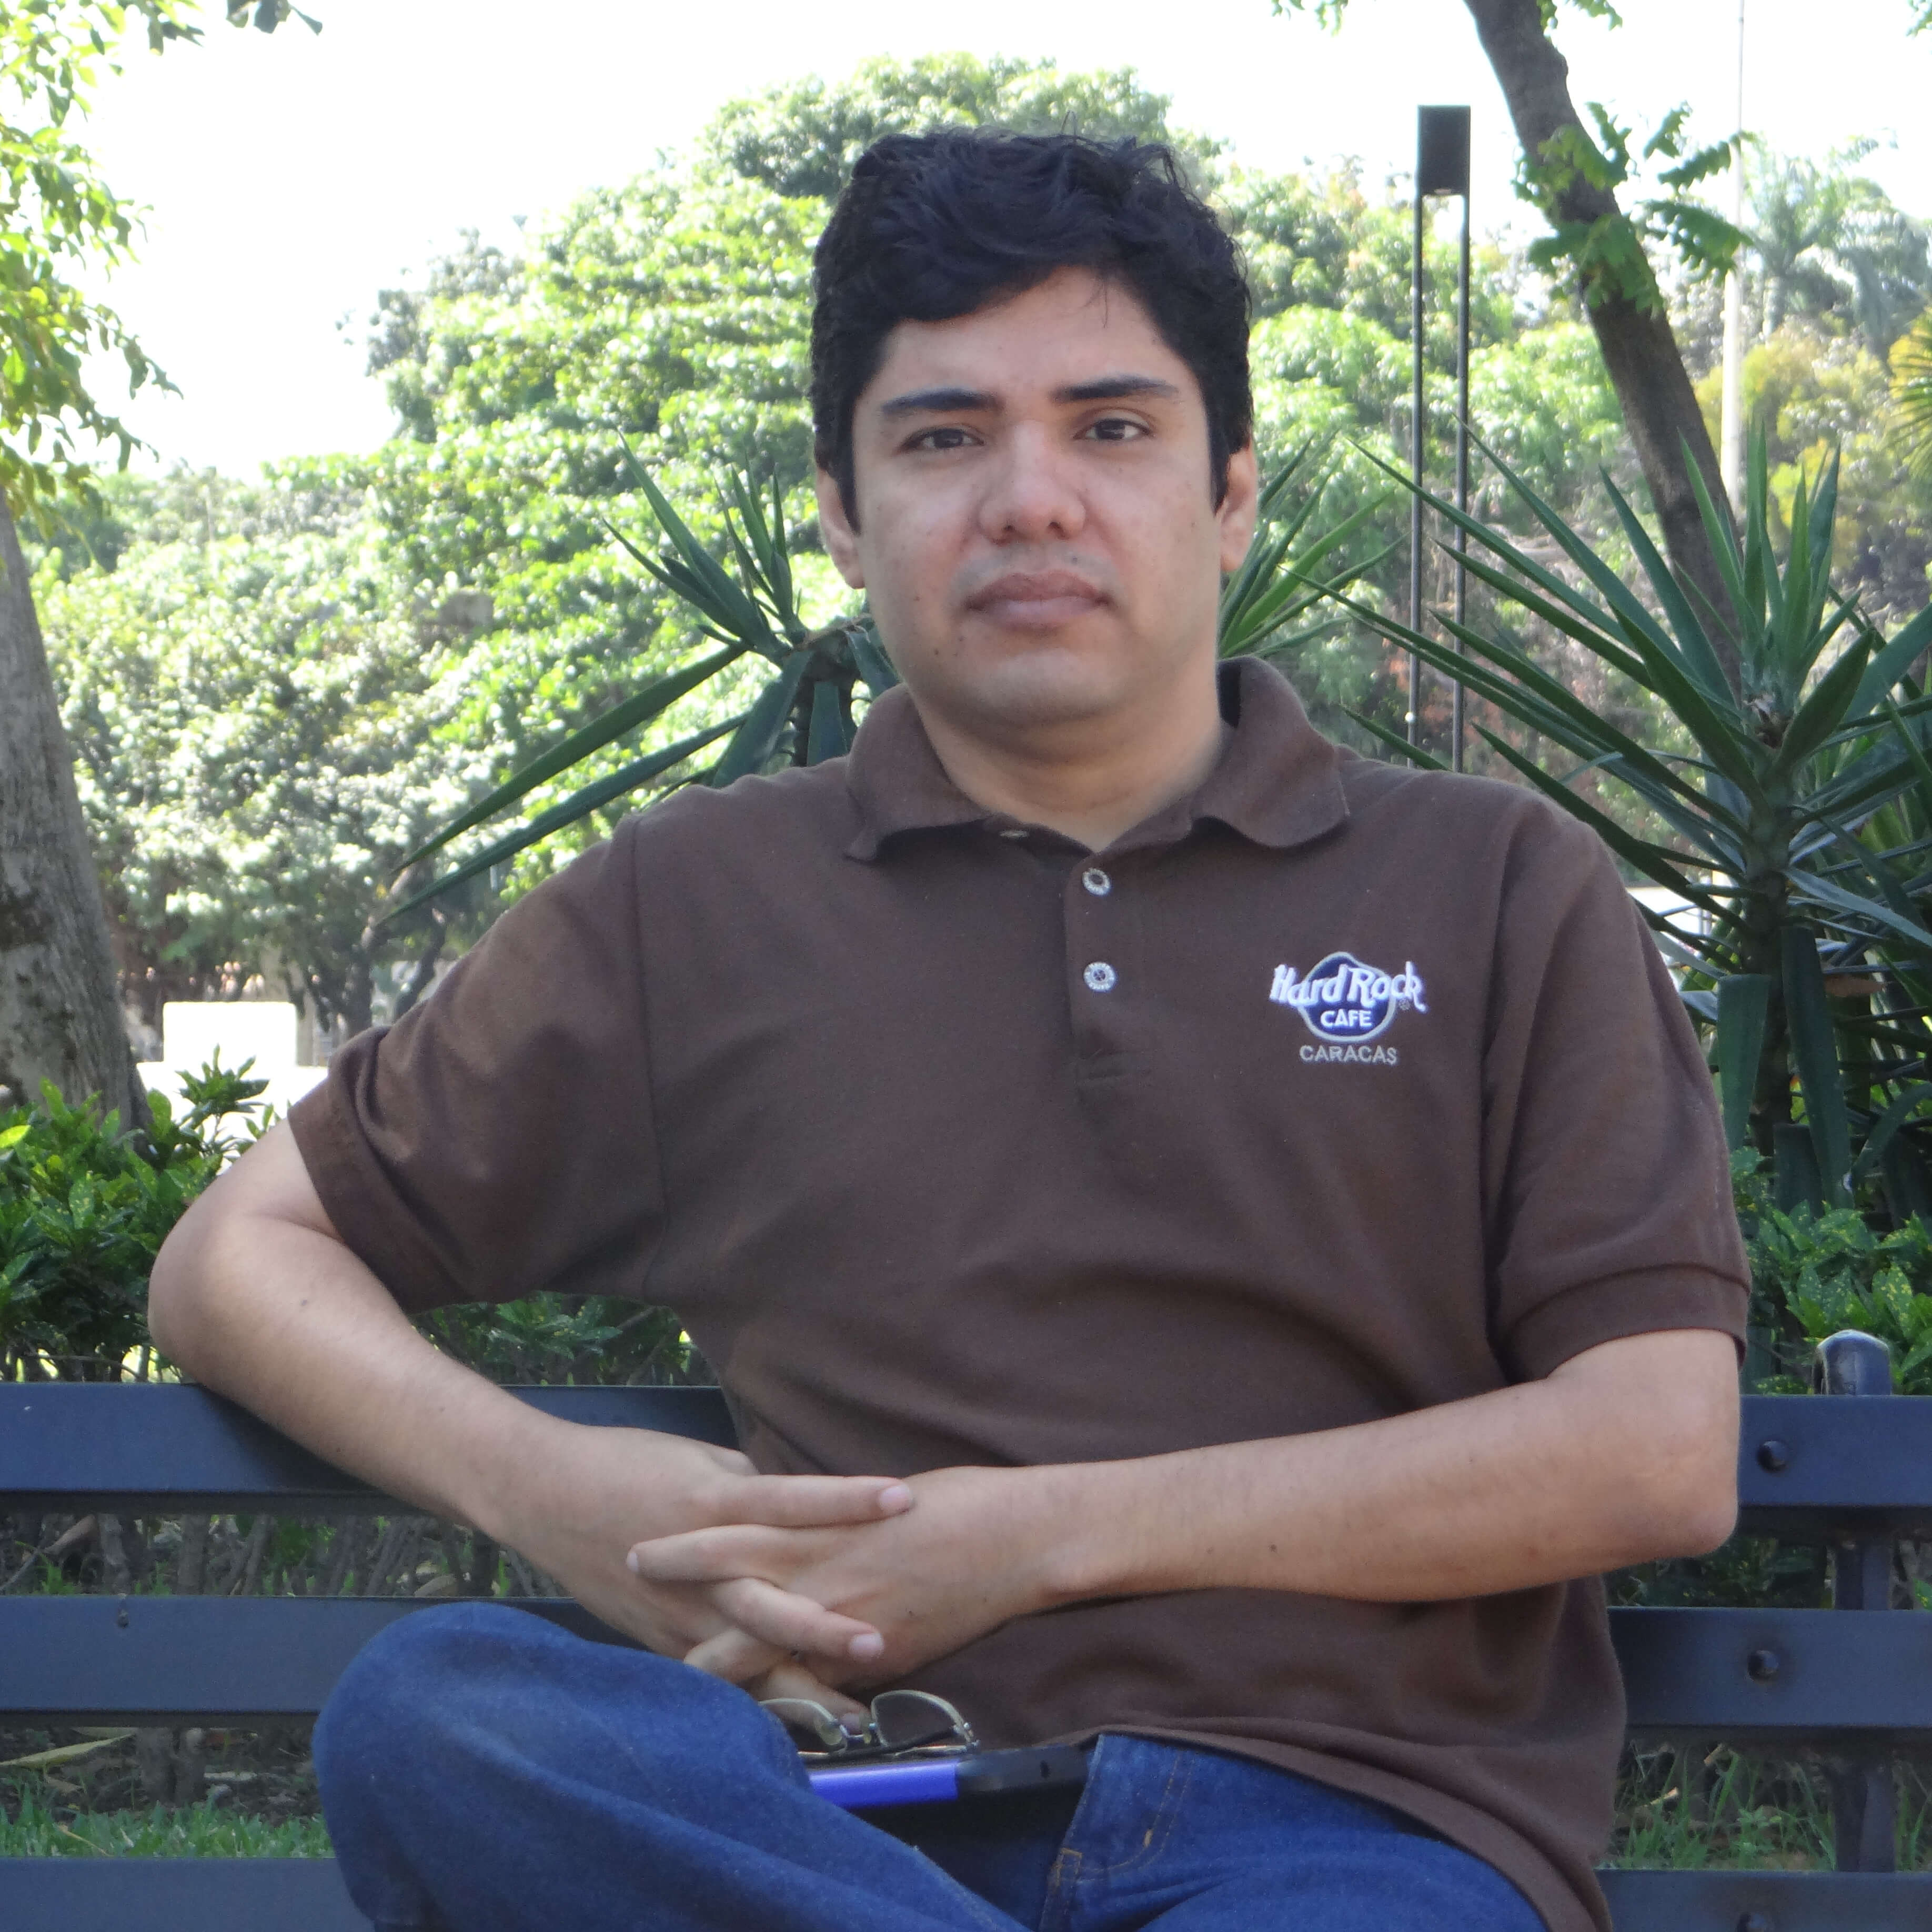 Marco Hernandez